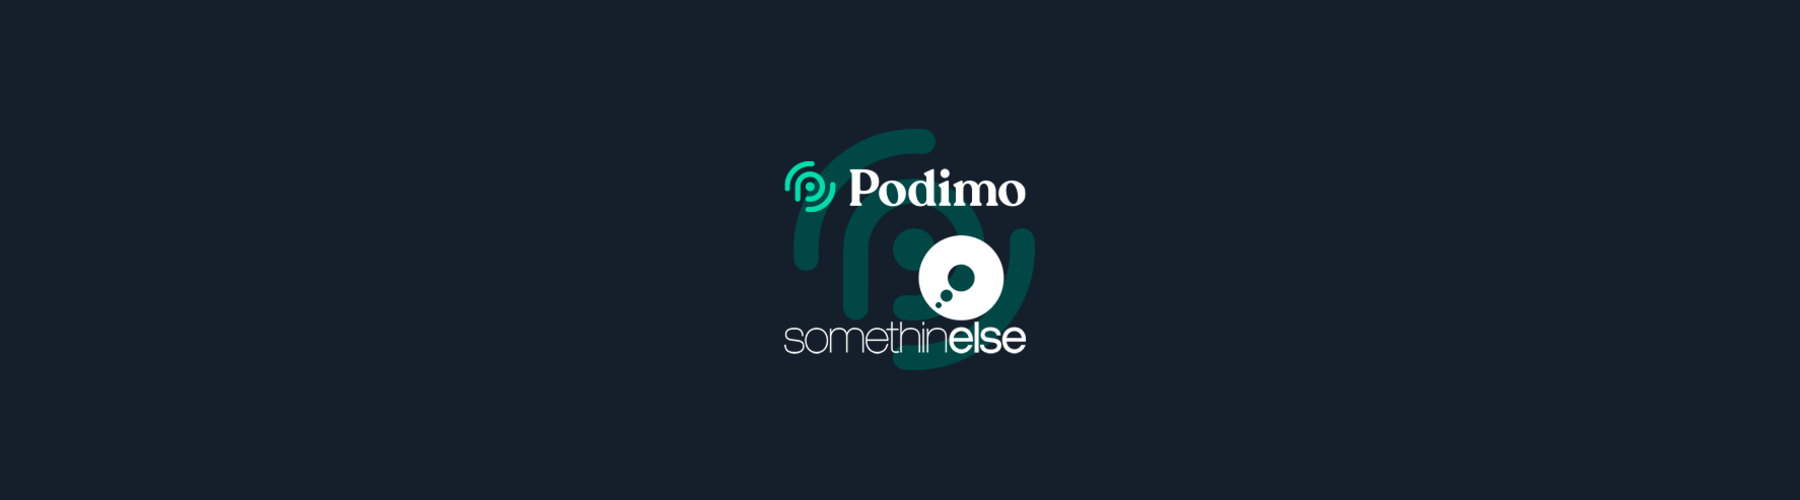 Los podcasts de Somethin ‘Else se traducirán a tres idiomas gracias a un acuerdo internacional con Podimo